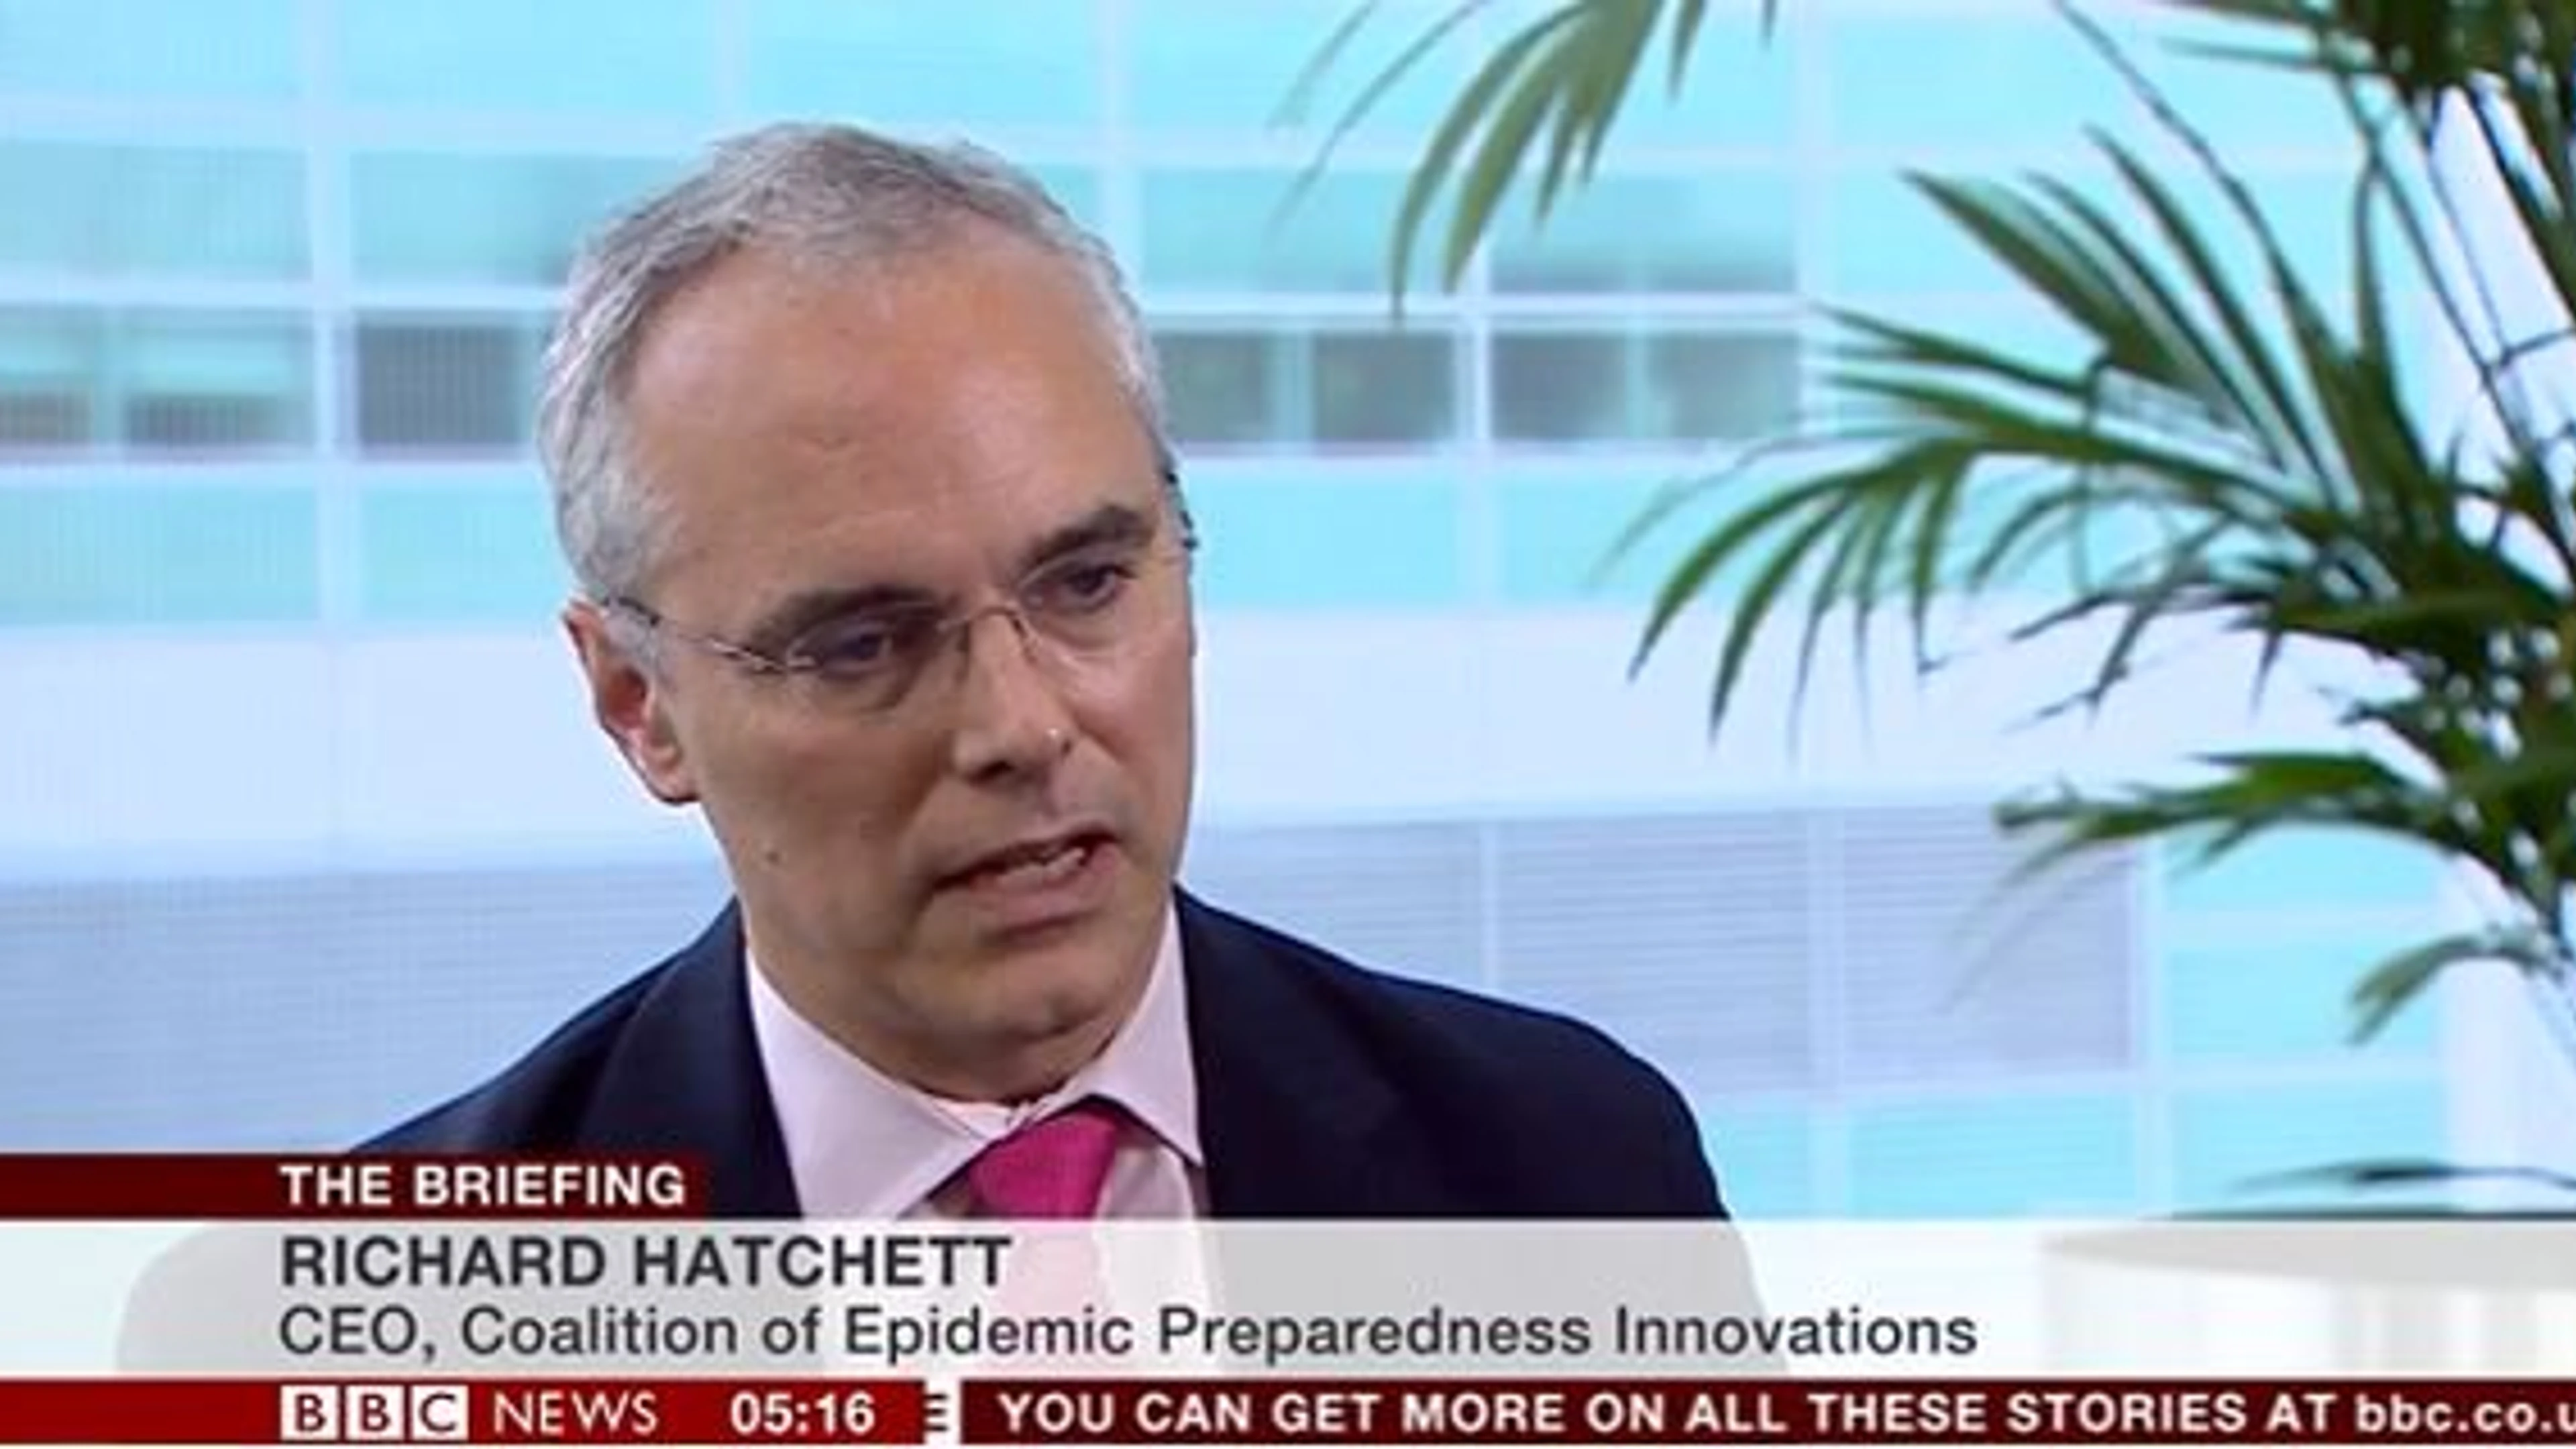 Richard Hatchett interview with BBC